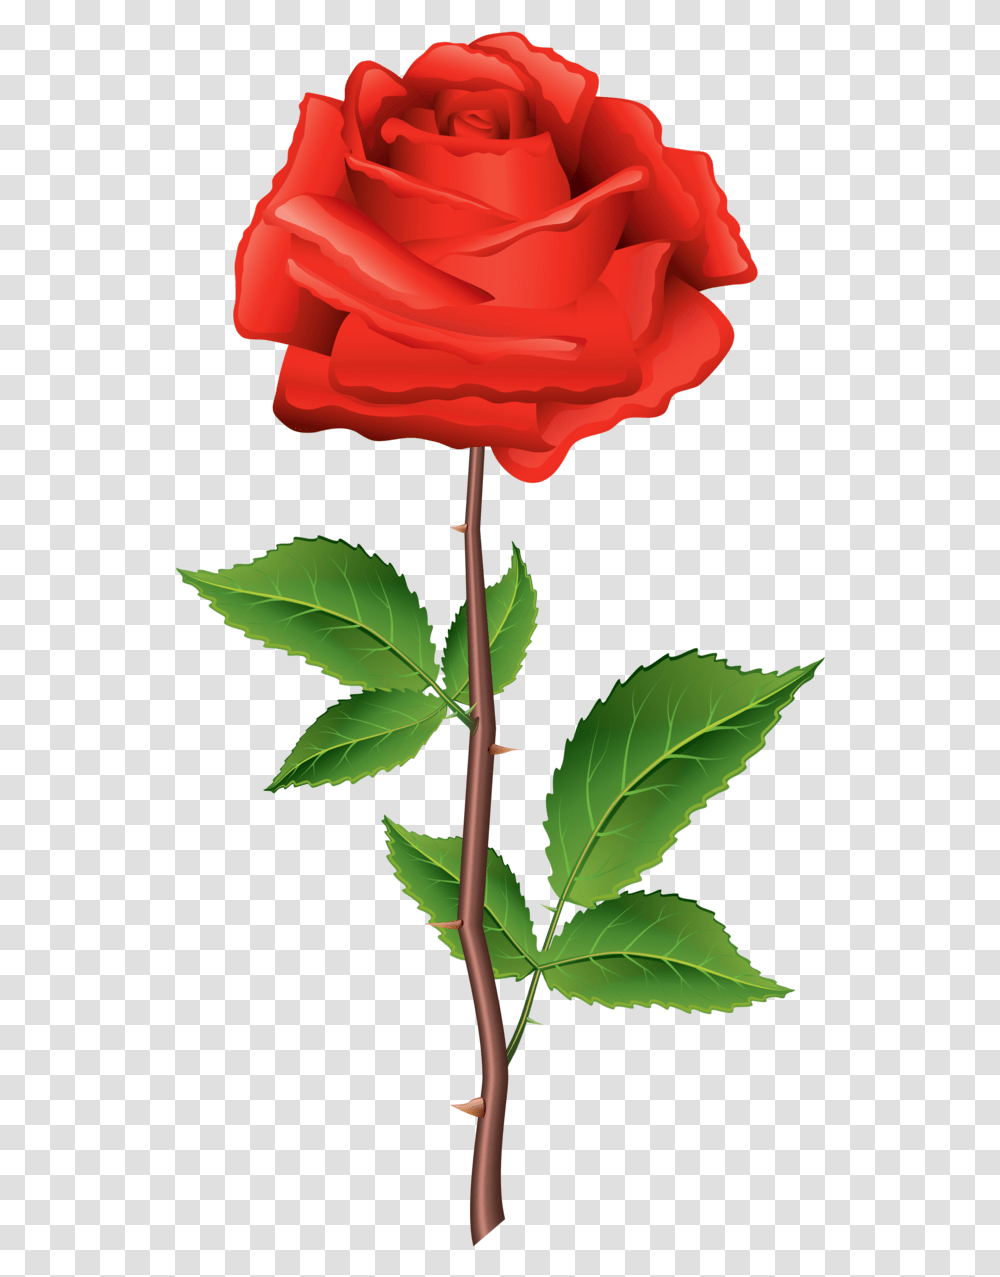 Rose Illustration, Plant, Flower, Blossom, Leaf Transparent Png